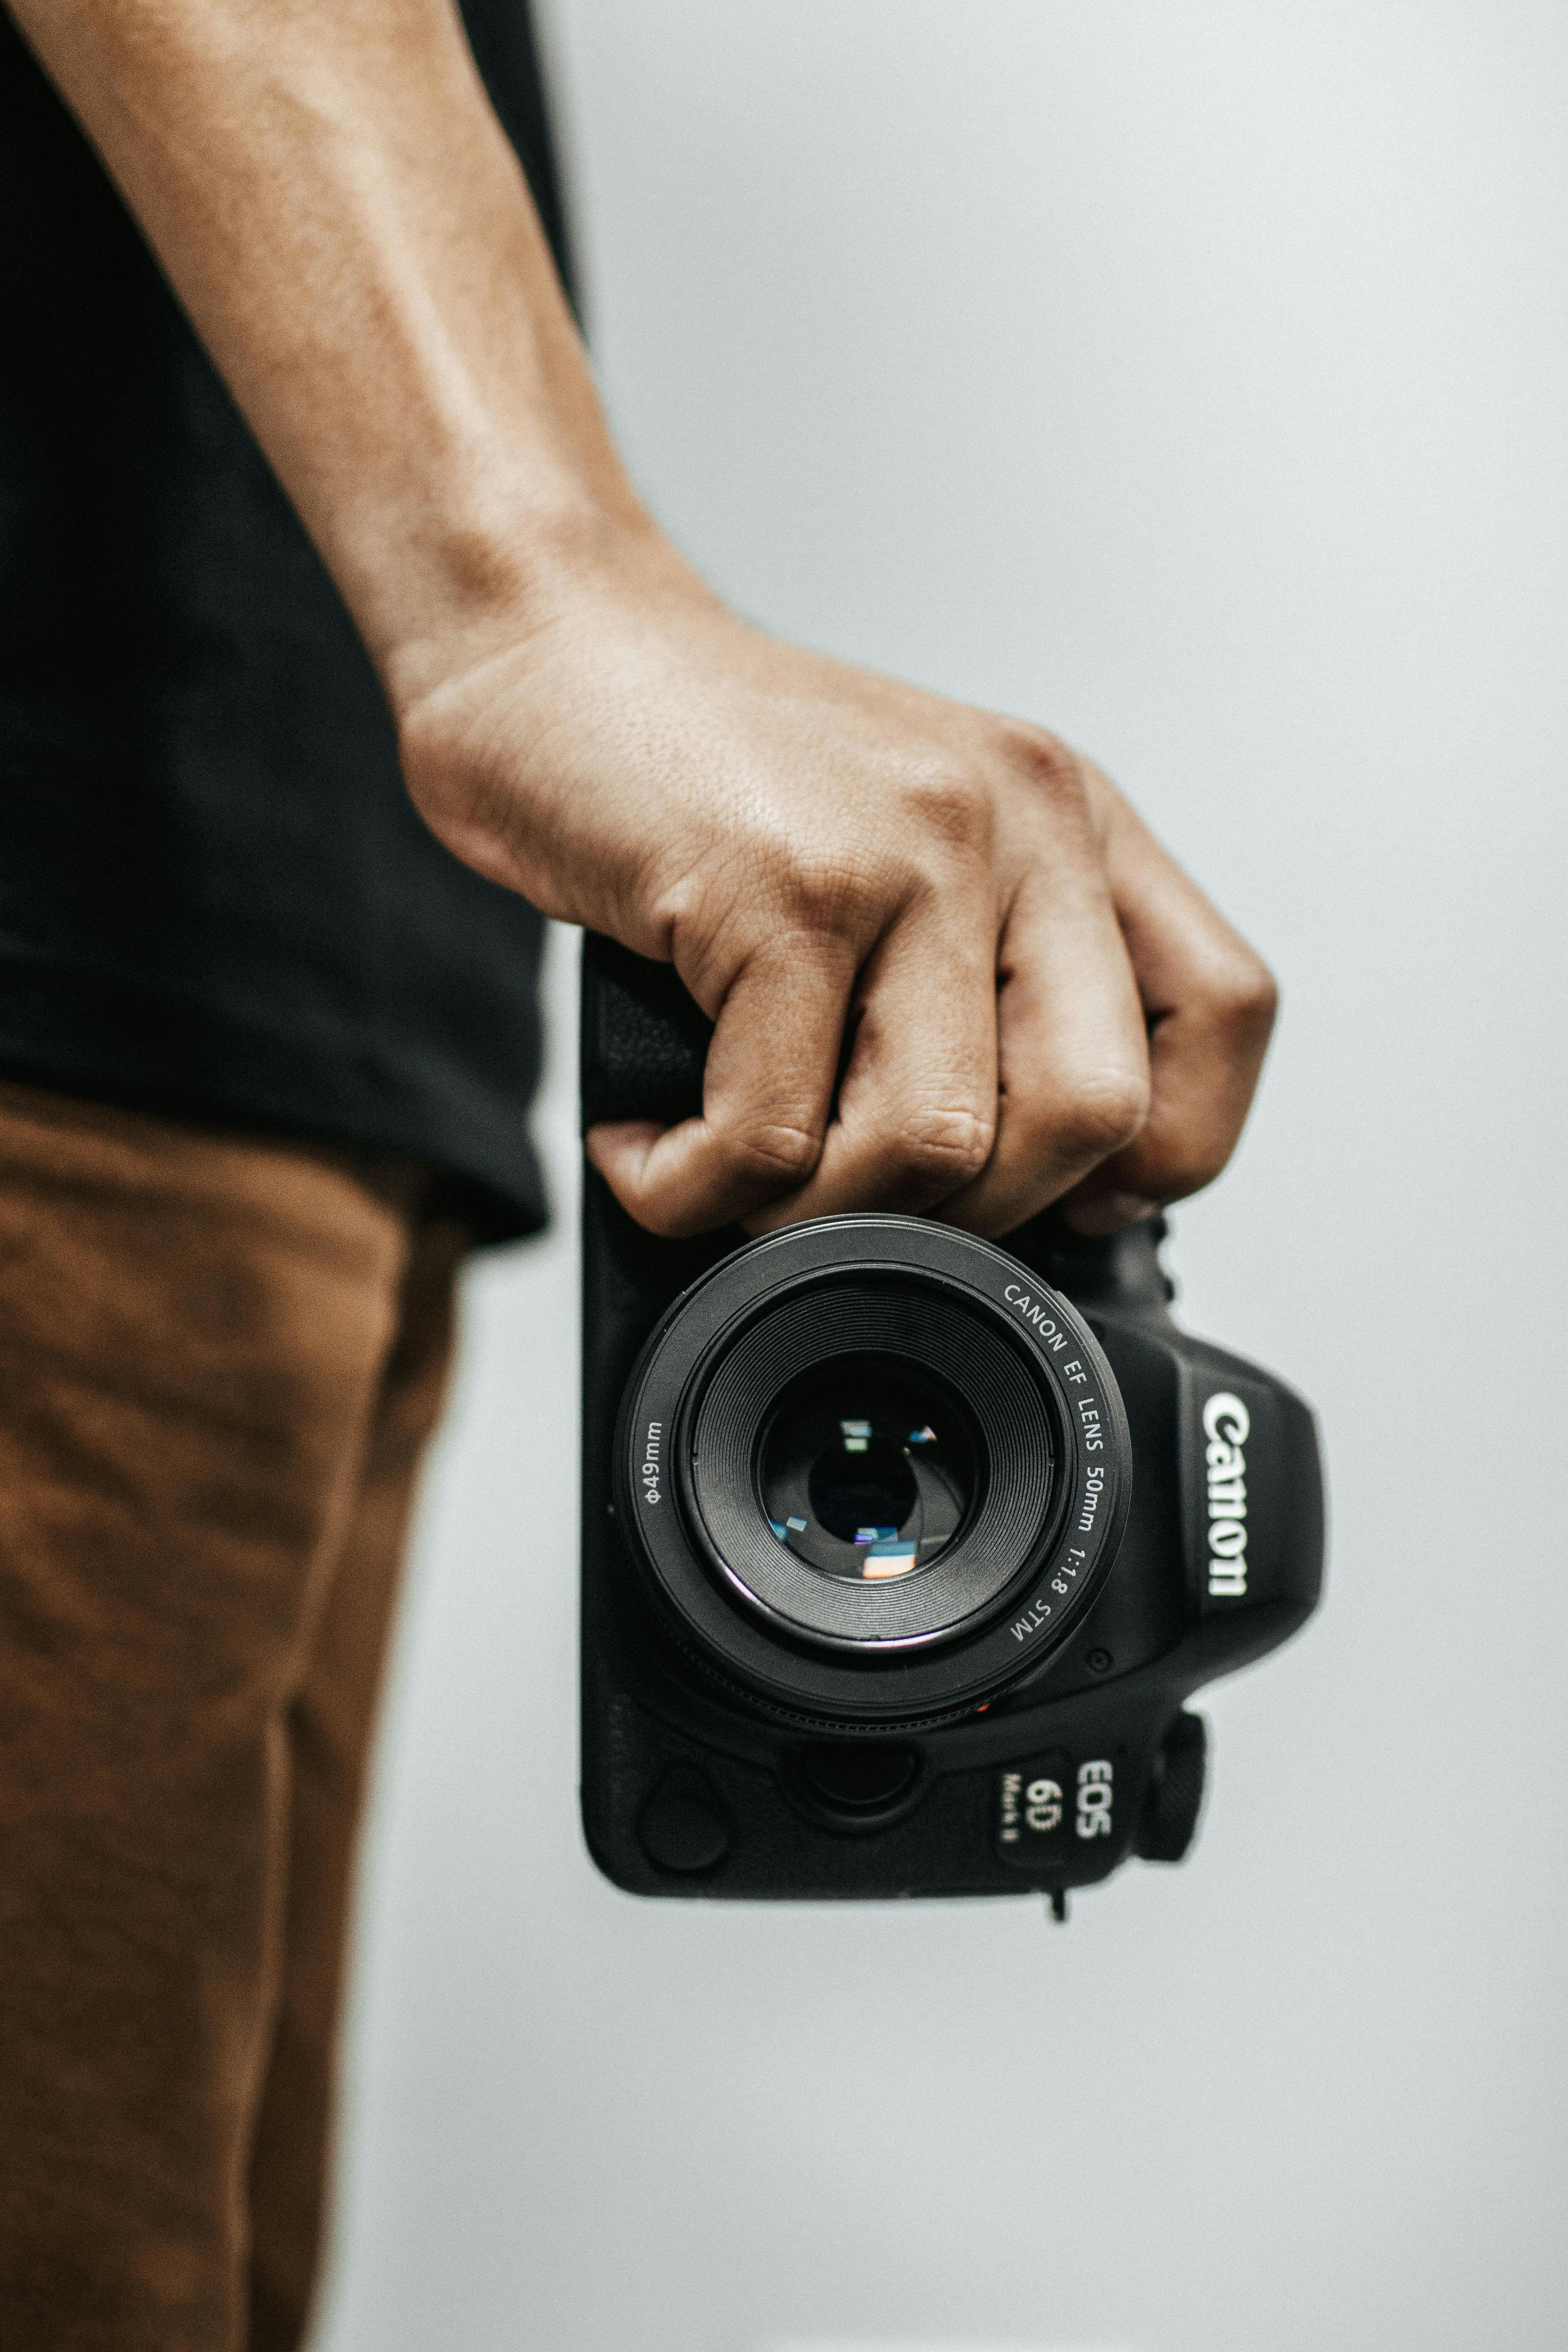 Máy ảnh Canon EOS 6D: Máy ảnh chuyên nghiệp Canon EOS 6D là sự lựa chọn tuyệt vời cho các tín đồ yêu thích chụp ảnh. Với tính năng siêu độc đáo và chất lượng ảnh đỉnh cao, bạn sẽ được trải nghiệm những khung hình đầy sắc nét và tinh tế nhất. Bất kỳ ai yêu thích sáng tạo và tình yêu với nhiếp ảnh chắc chắn sẽ muốn khám phá thêm về máy ảnh này.